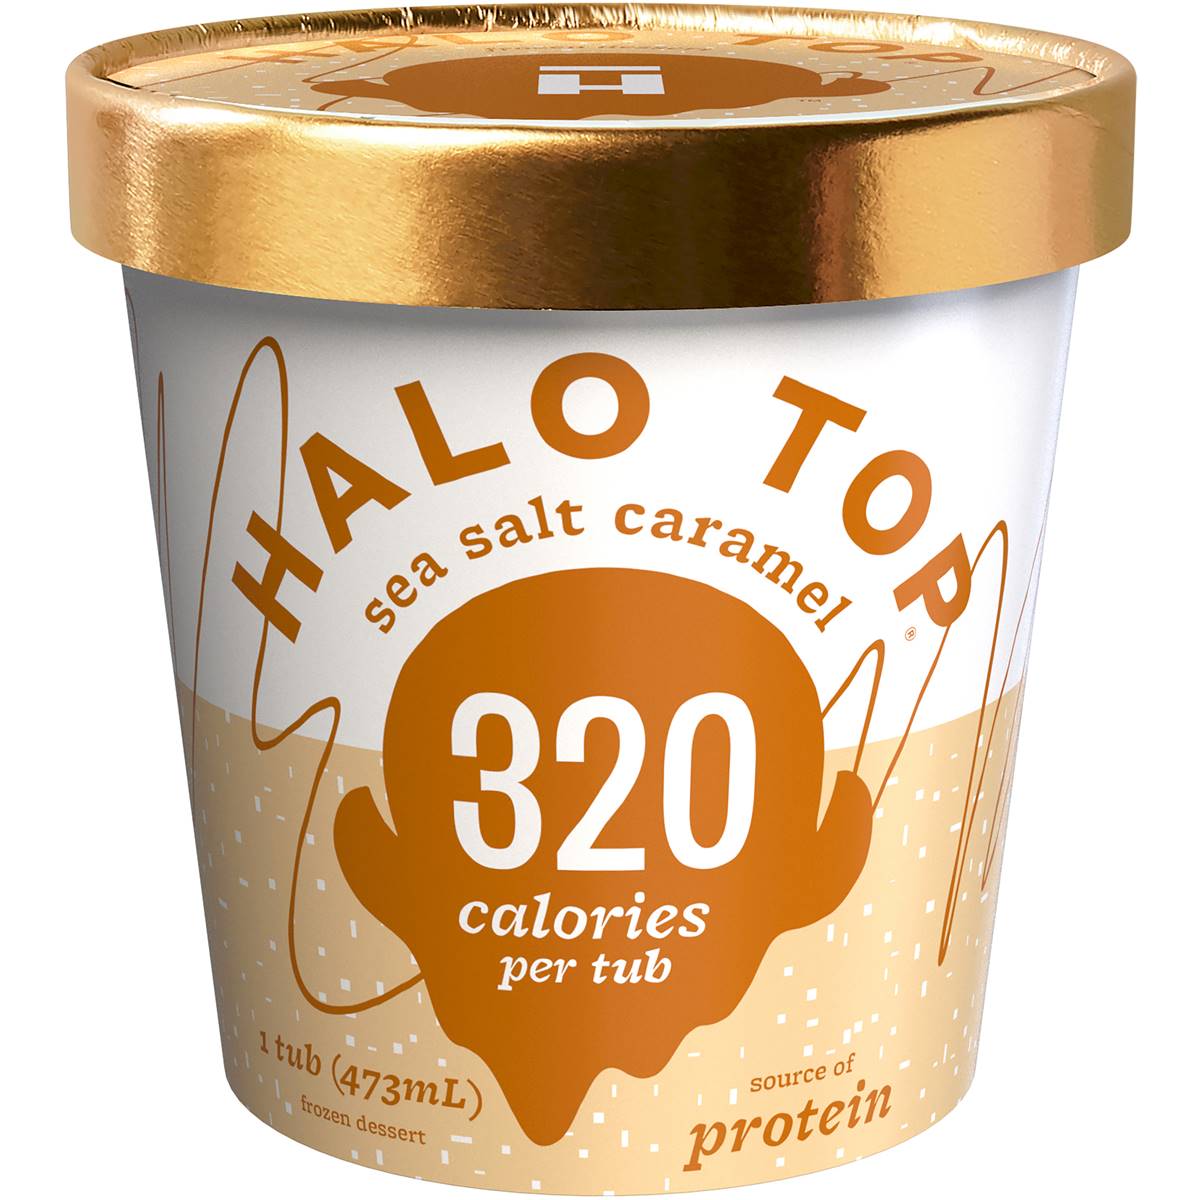 halo top ice cream